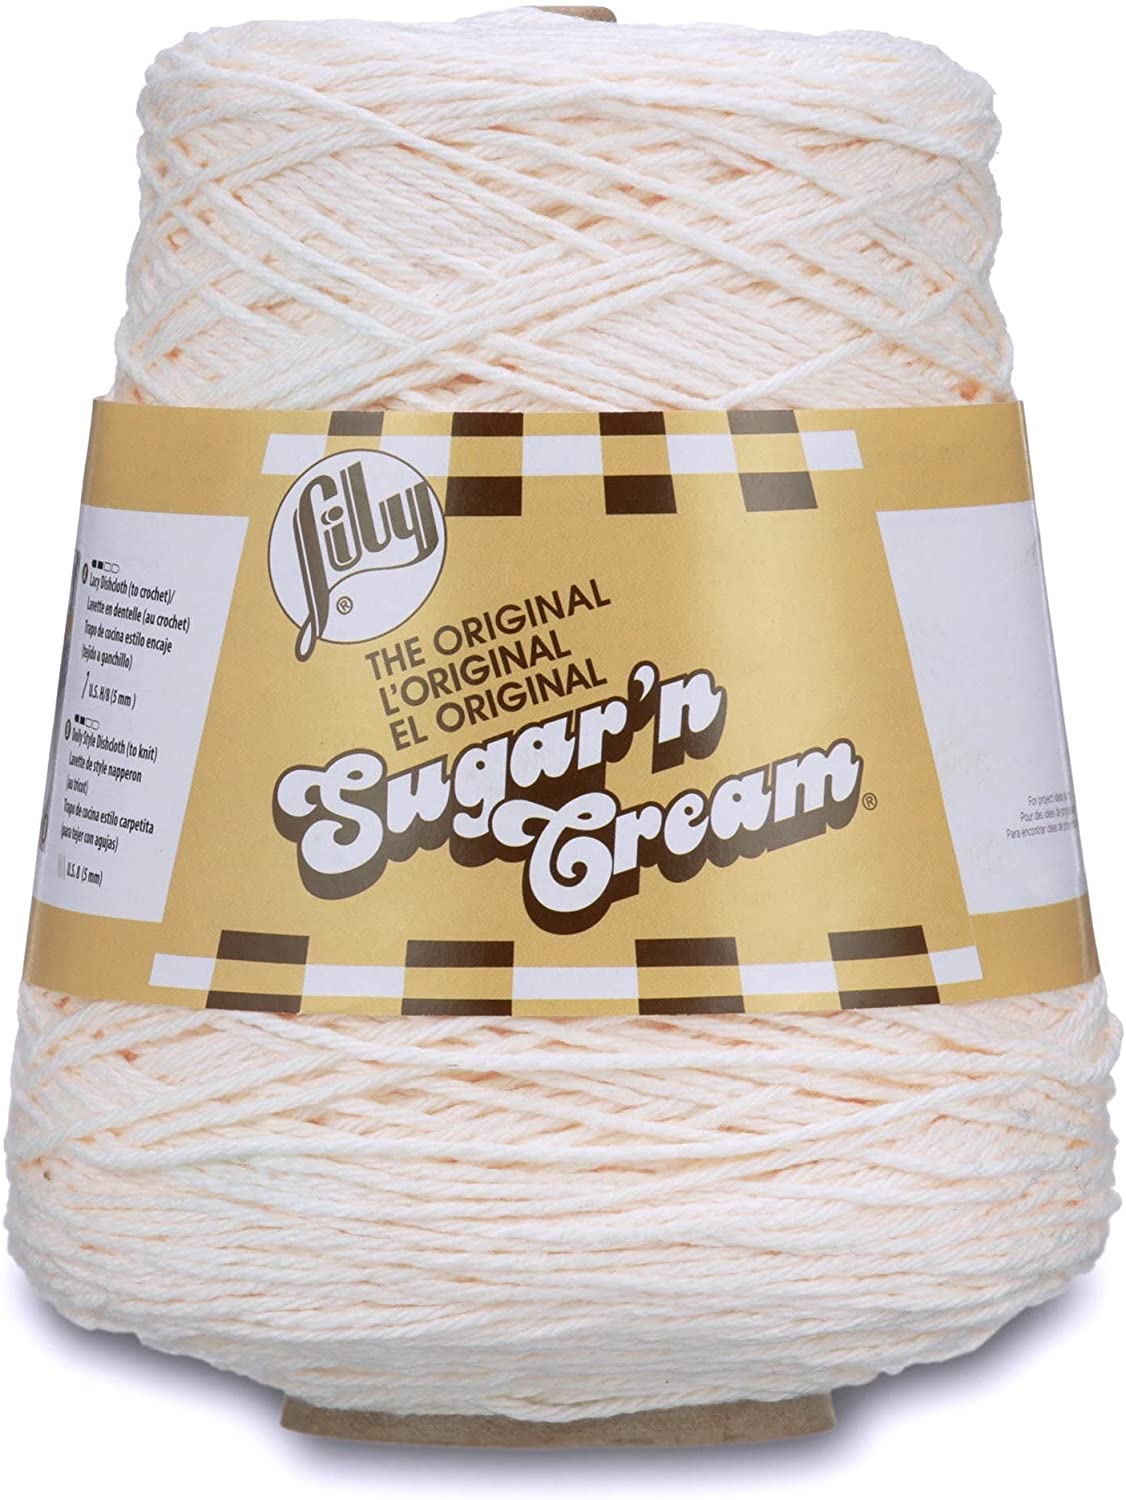 Lily Sugar'n Cream Cotton Cone Yarn